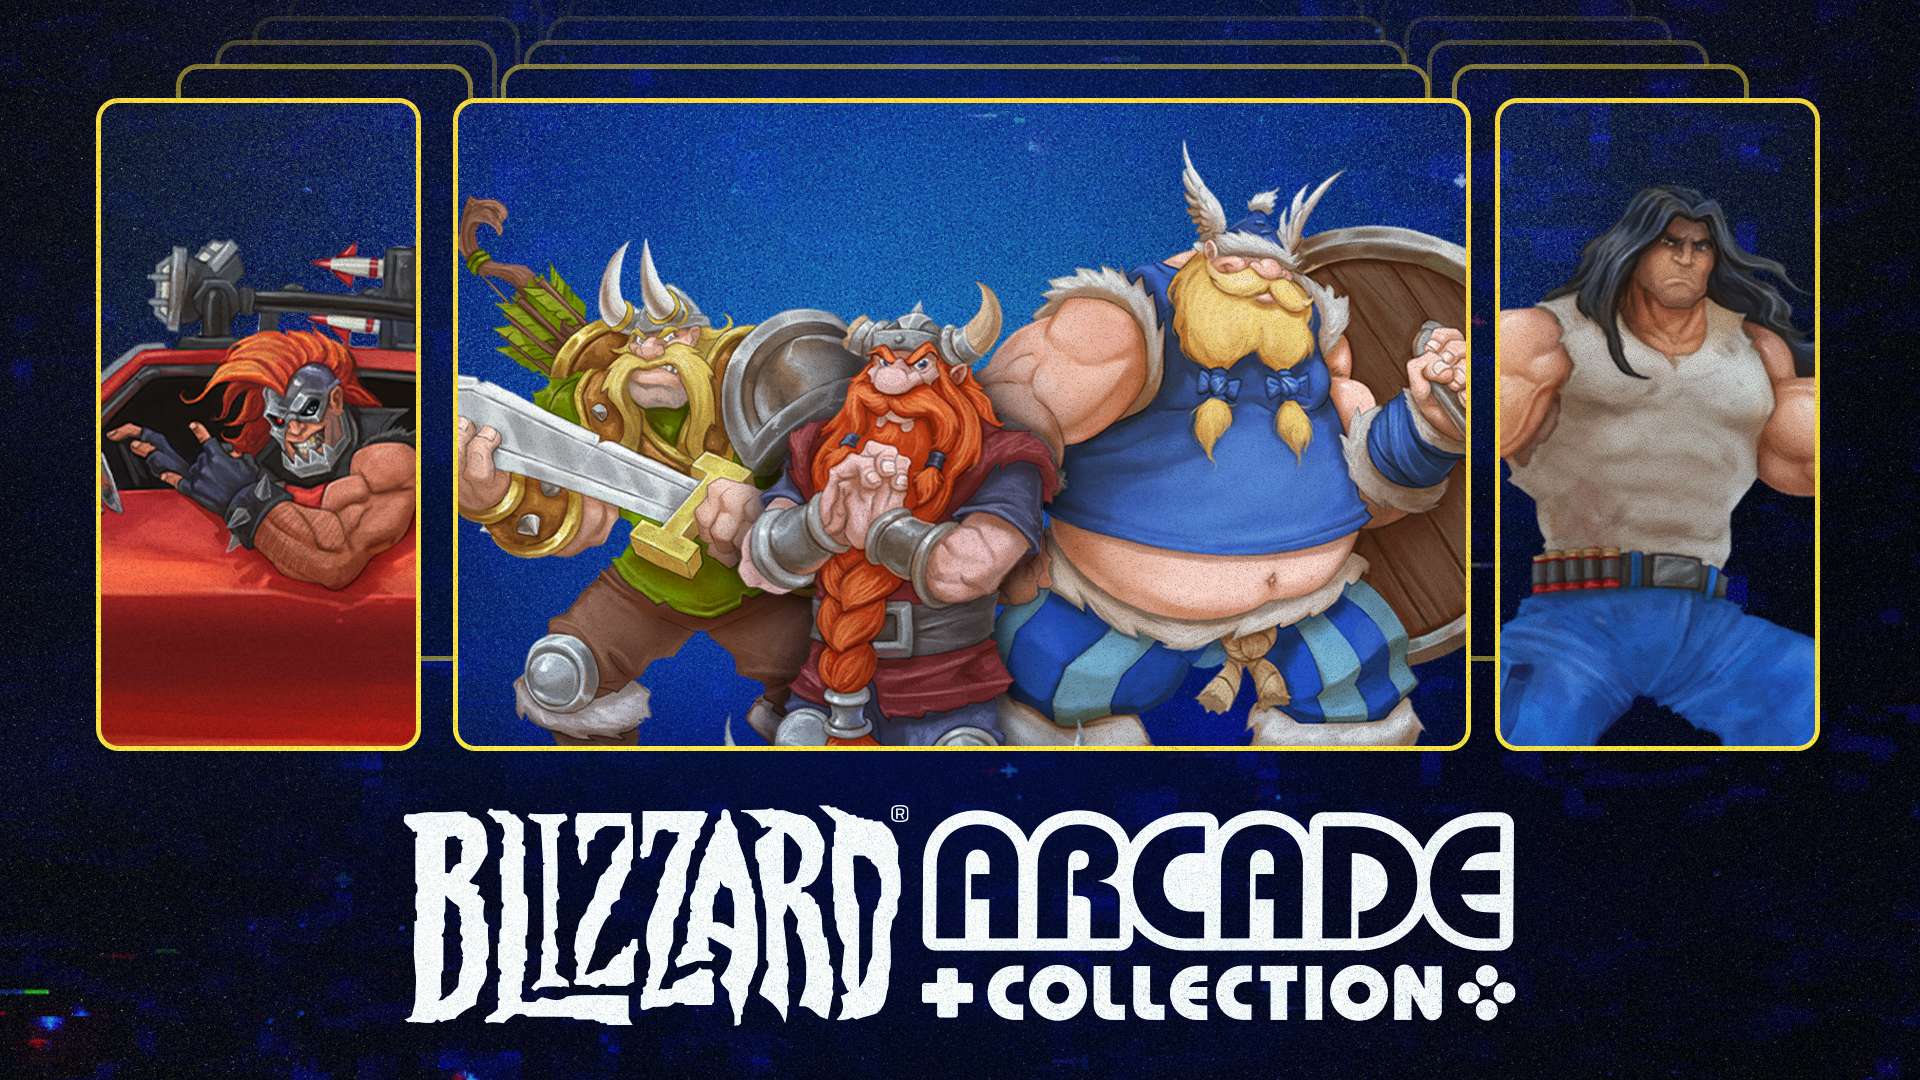 Blizzard® Arcade Collection otrzymuje nowe gry i funkcje